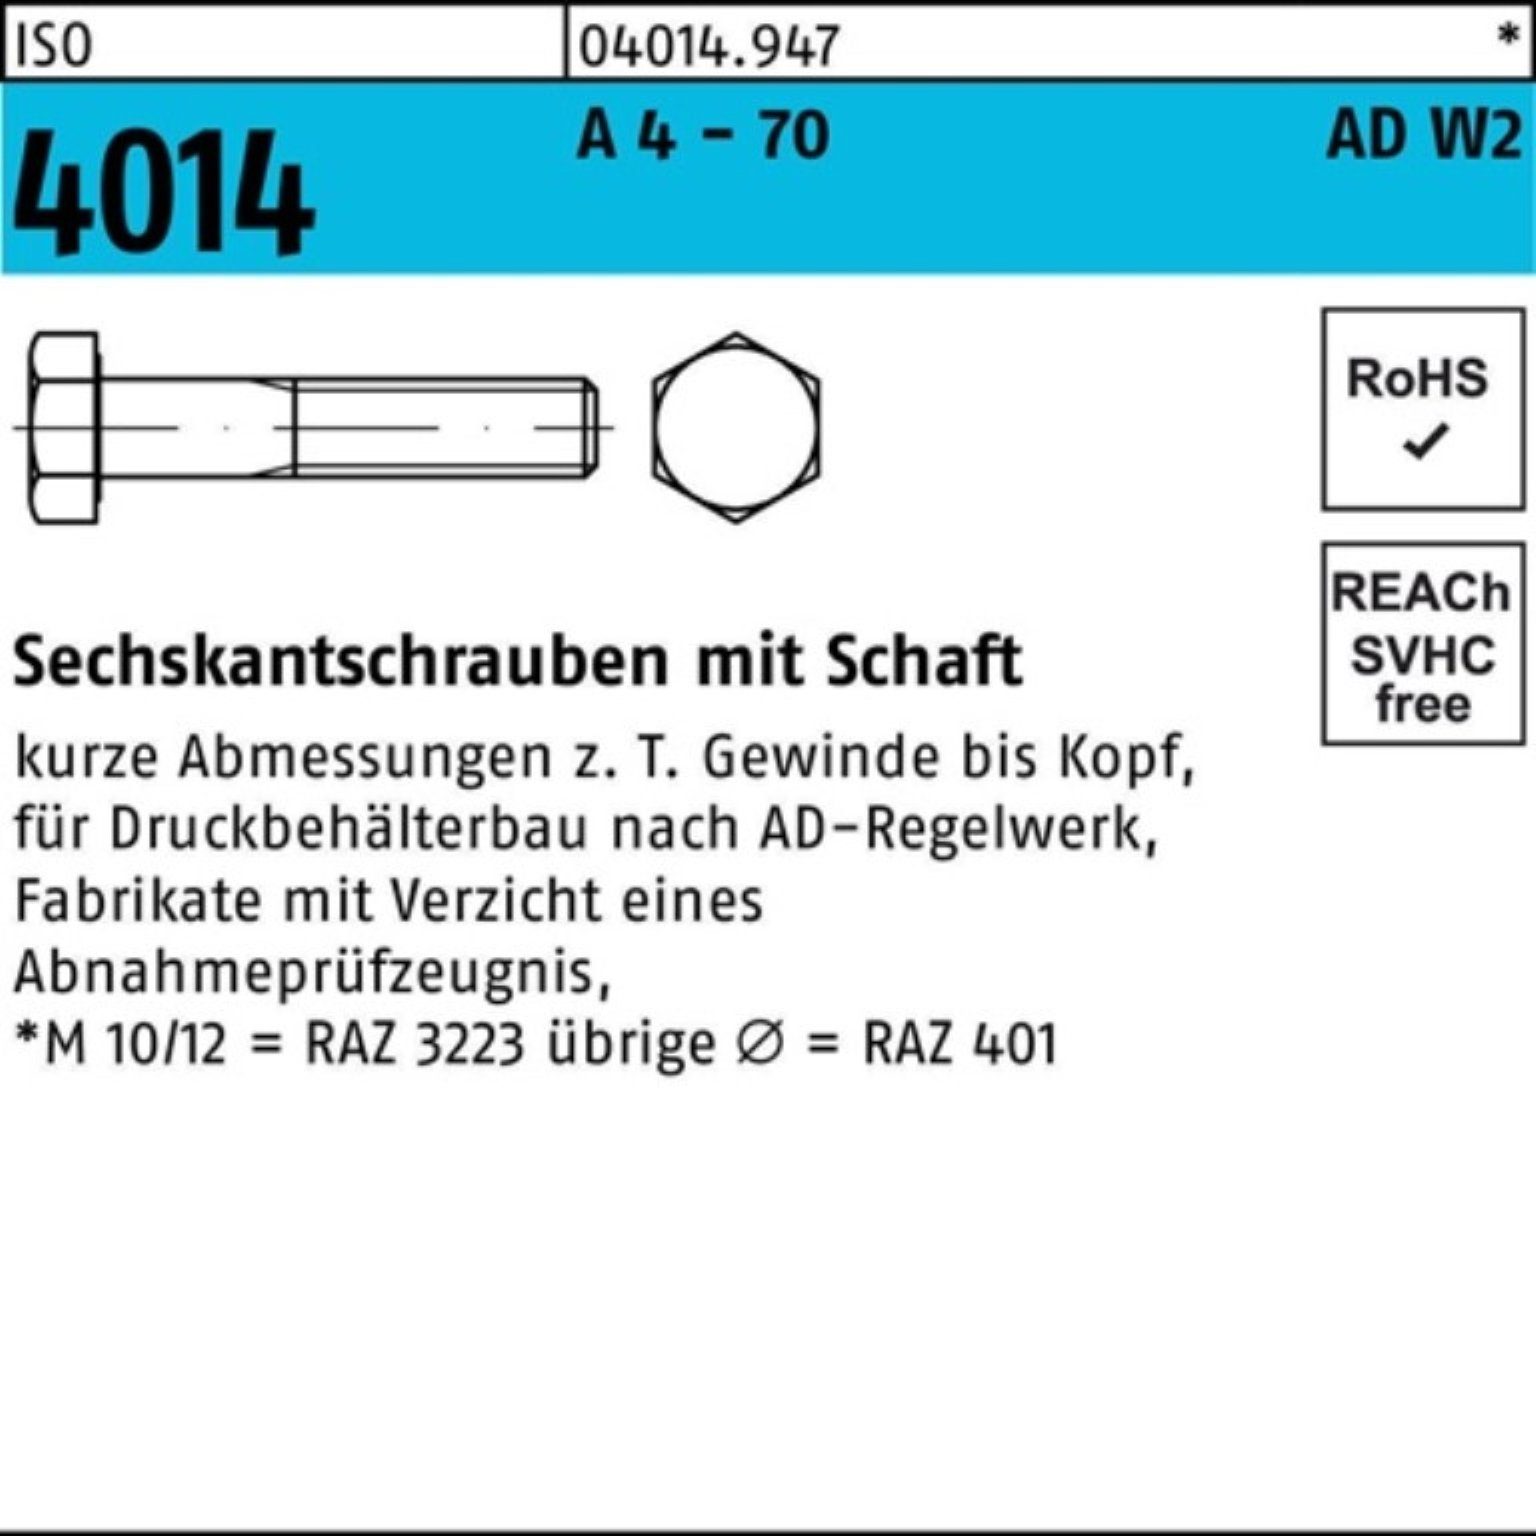 Bufab Sechskantschraube 100er Pack Sechskantschraube ISO 4014 Schaft M10x 55 A 4 - 70 AD-W2 10